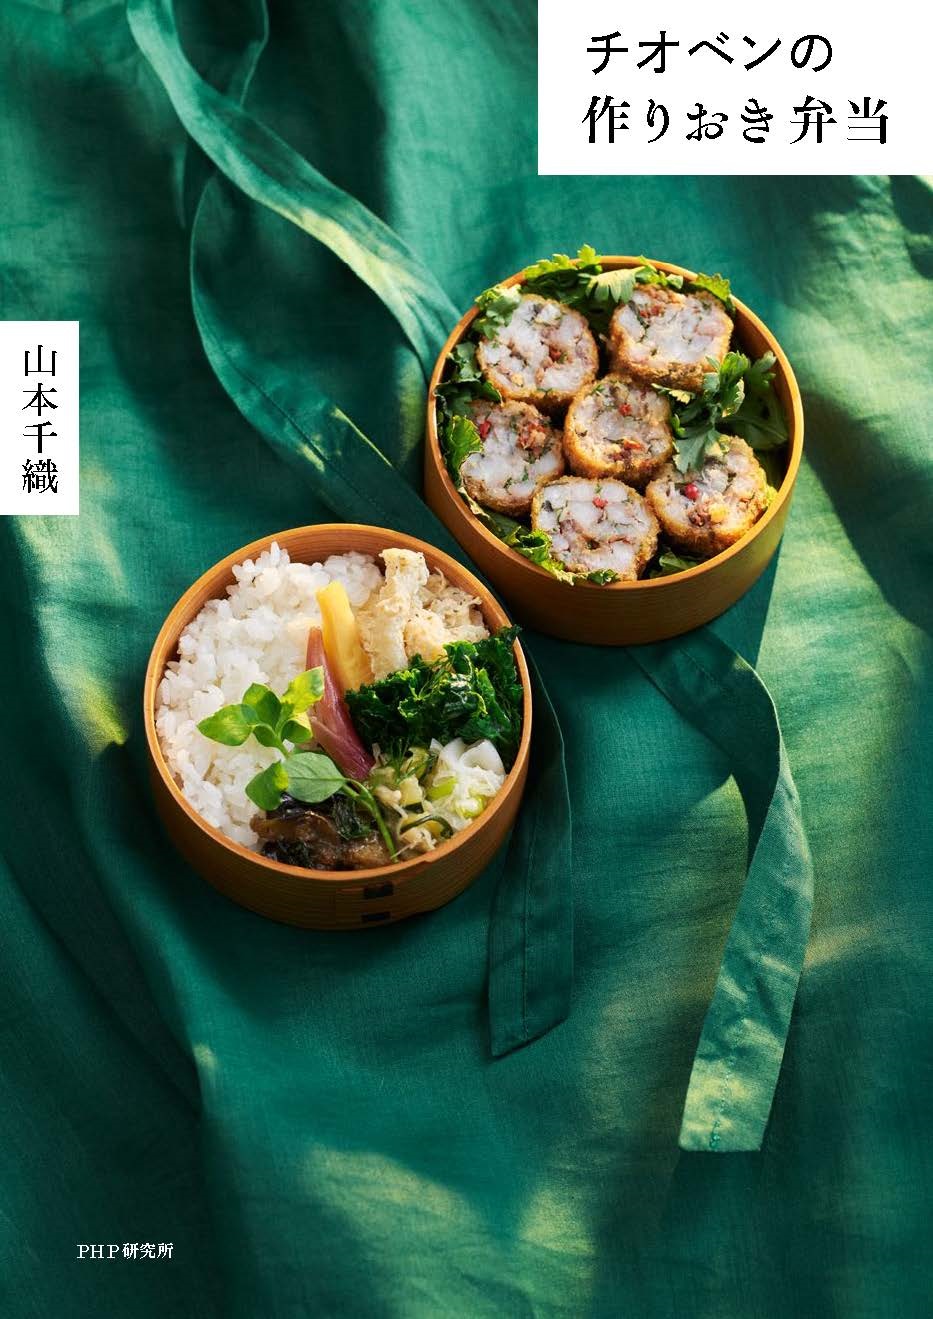 幻の Chioben が作りおきおかずで再現できる 山本千織さんのアイデア満載お弁当レシピ集を発売 Newscast